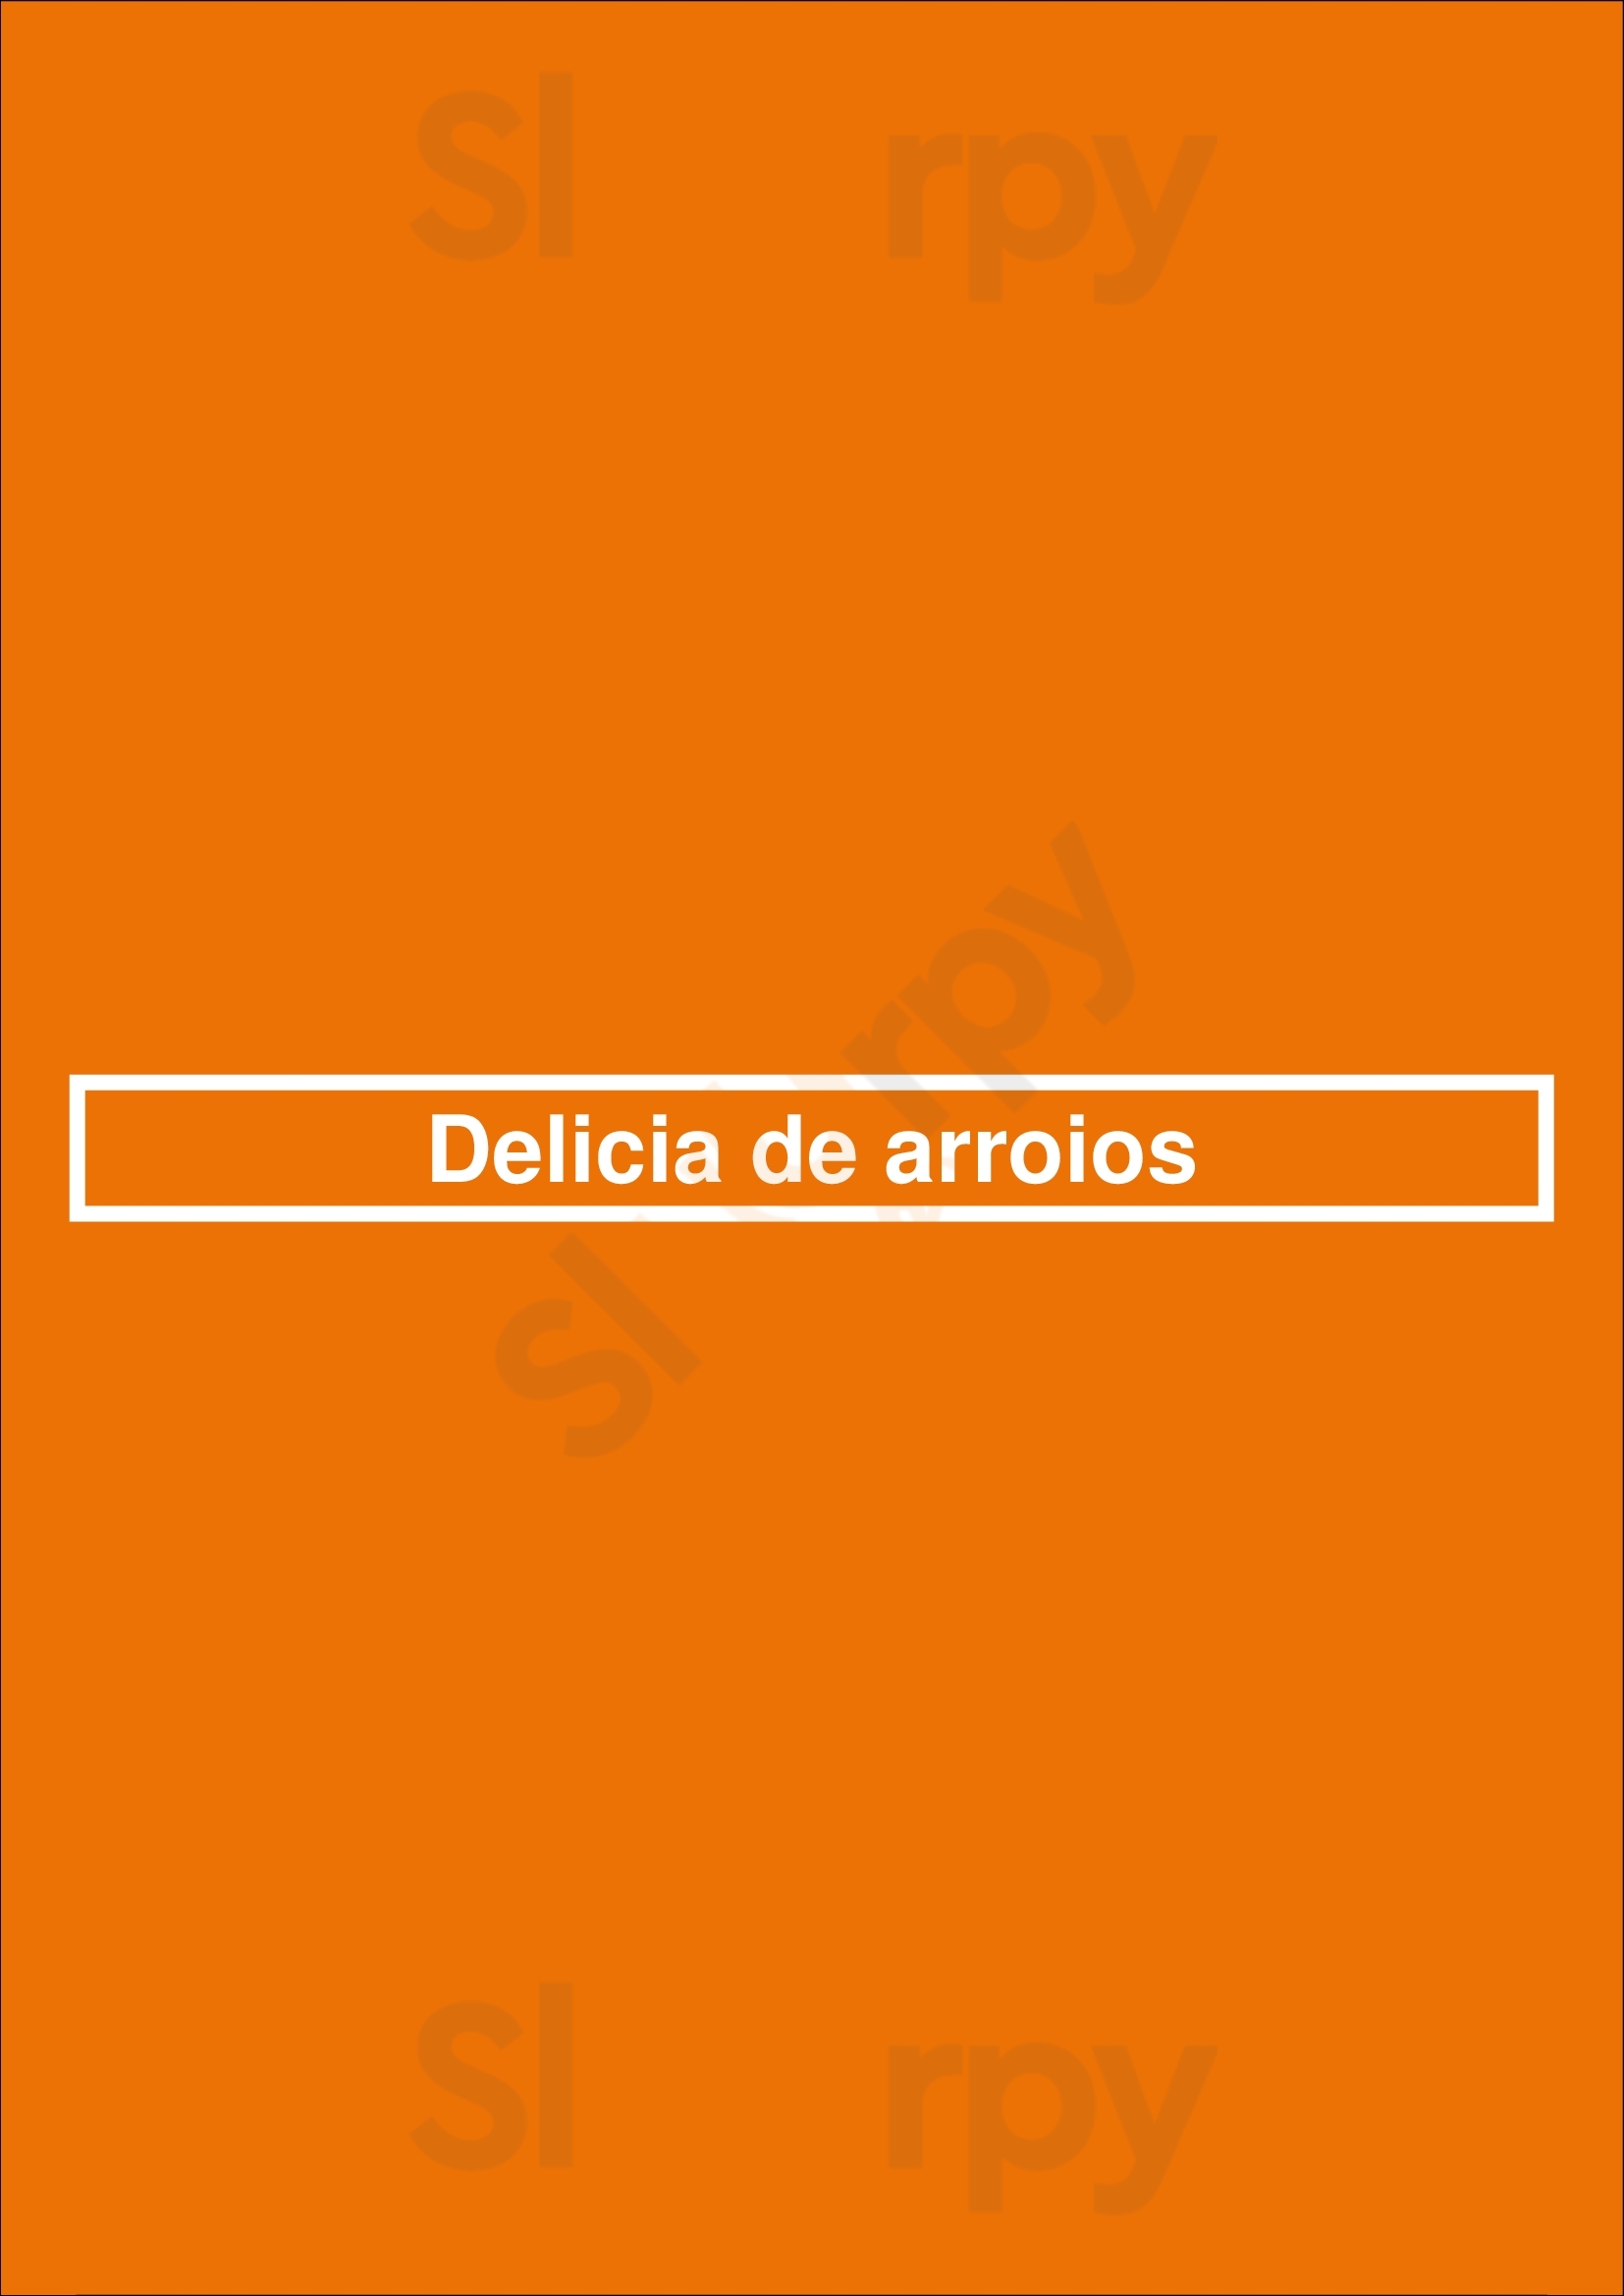 Delicia De Arroios Lisboa Menu - 1